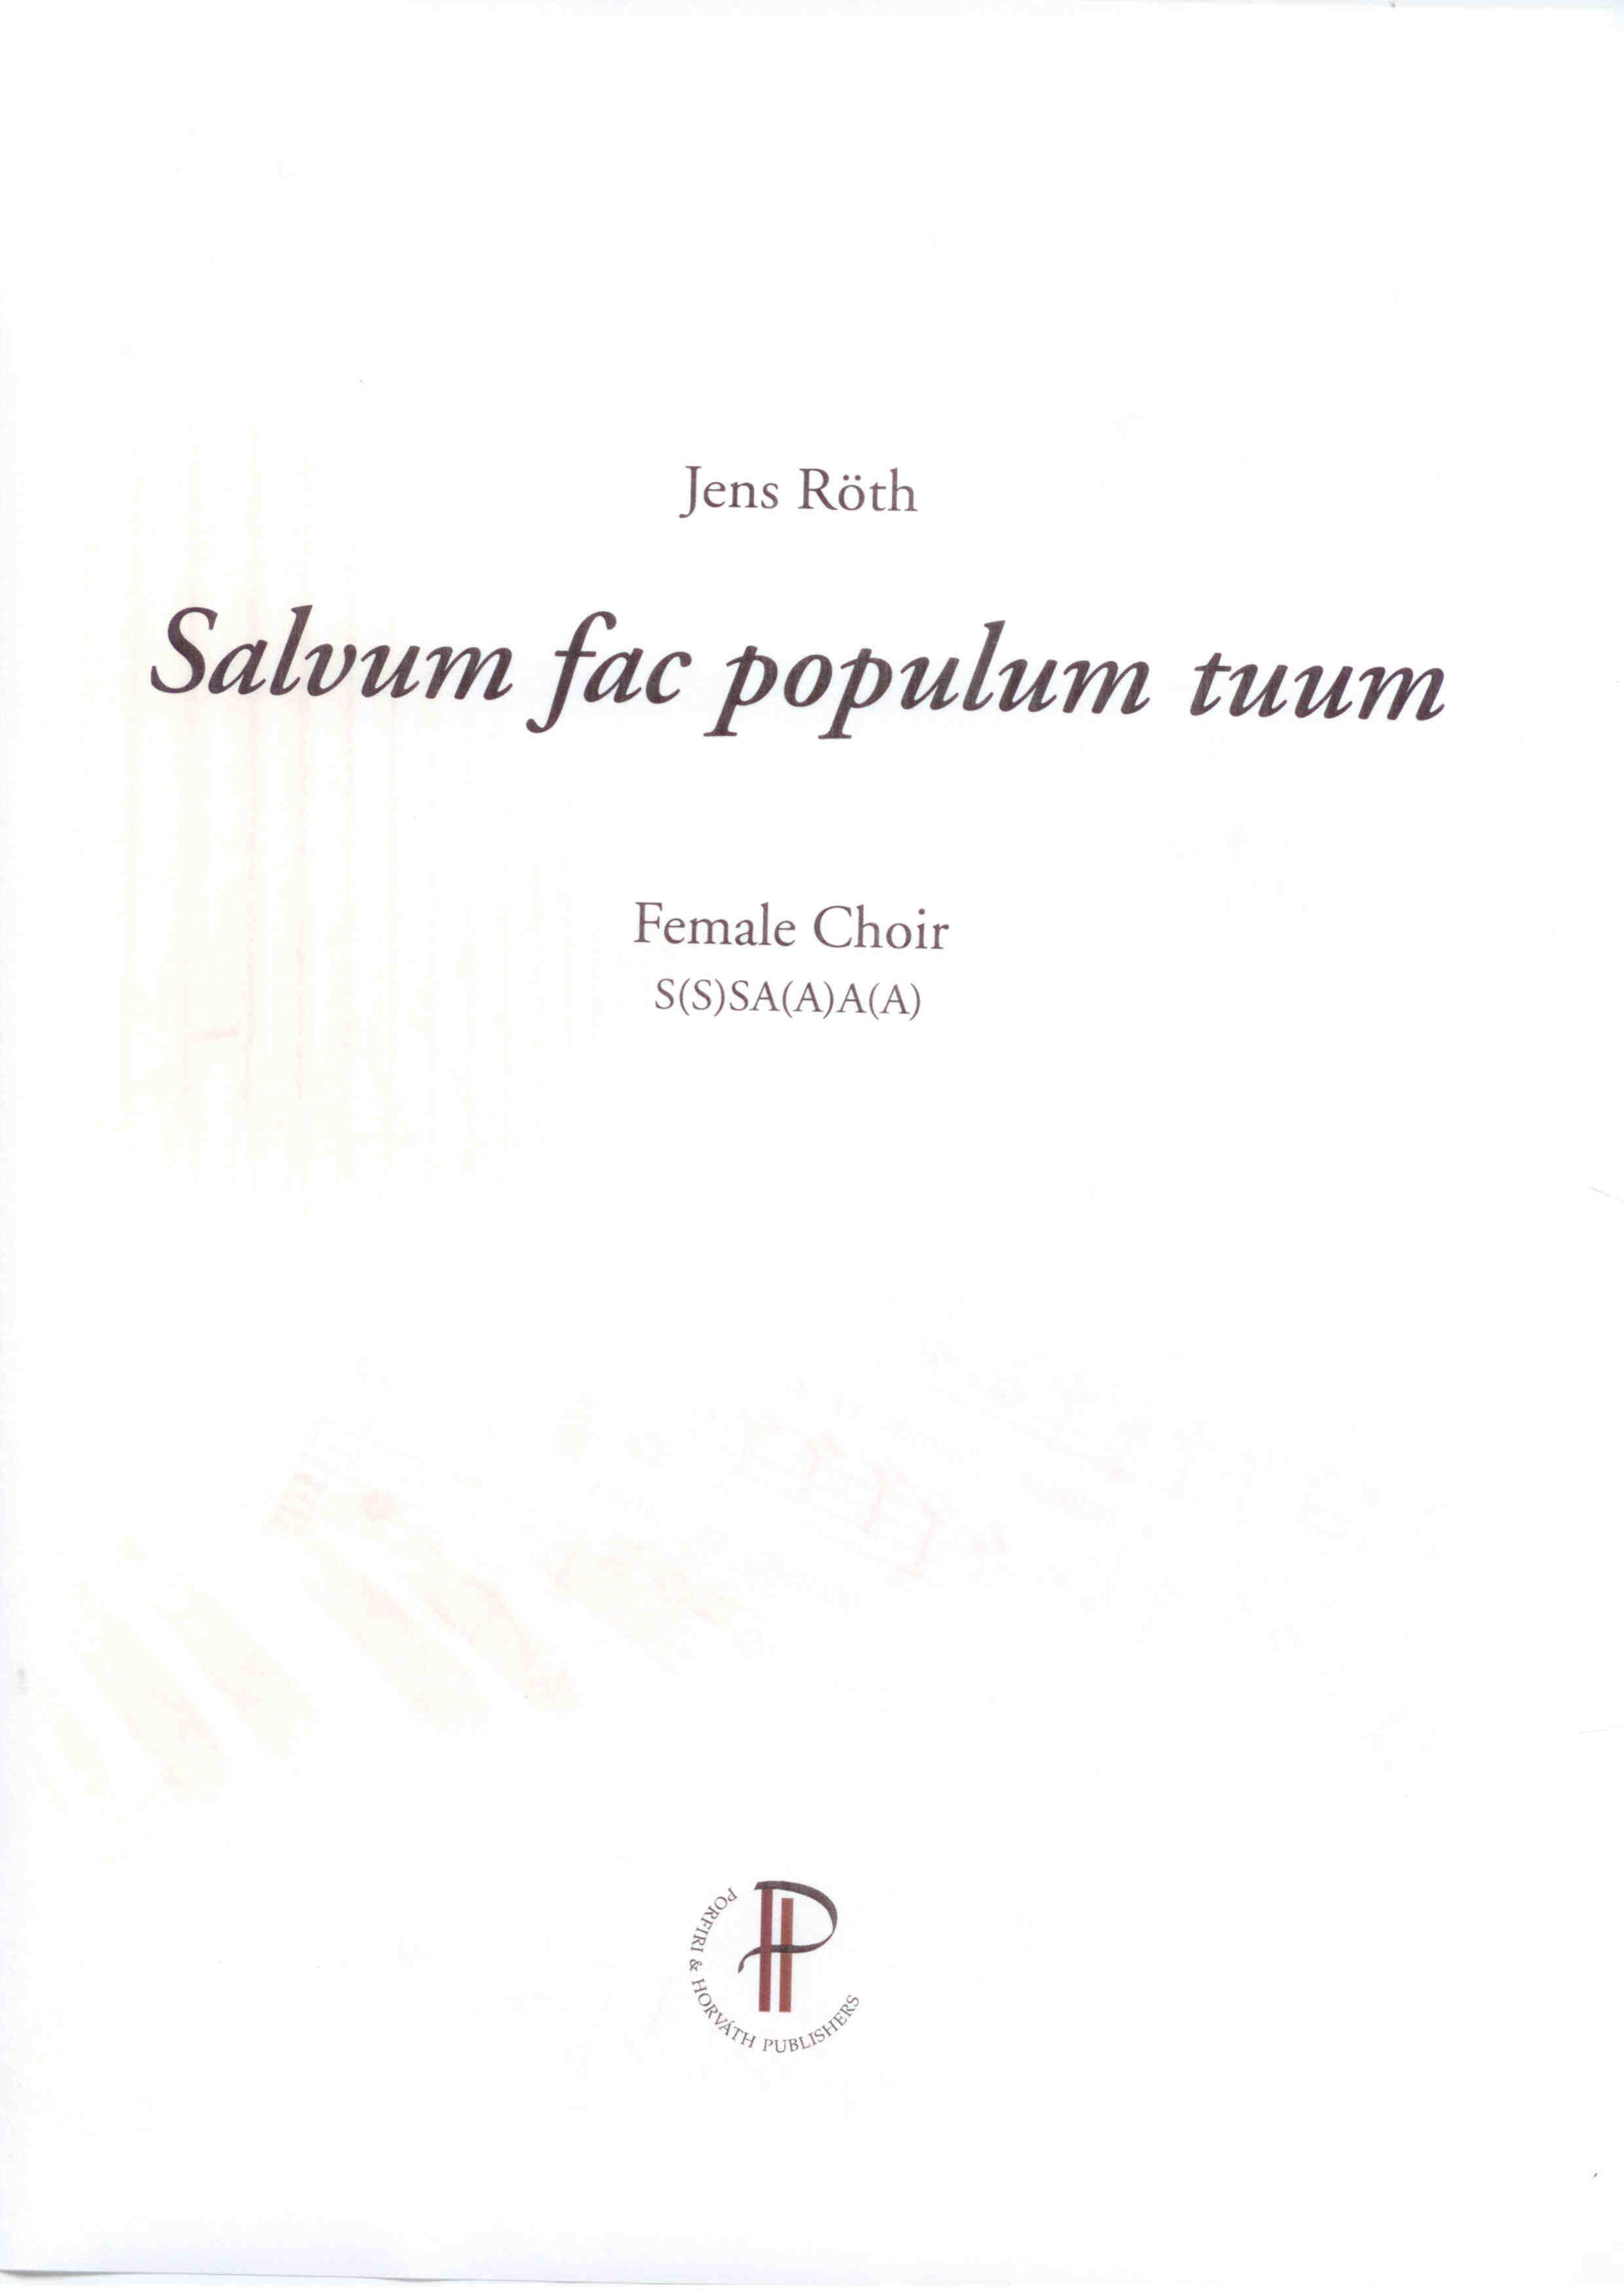 Salvum fac populum tuum - Show sample score